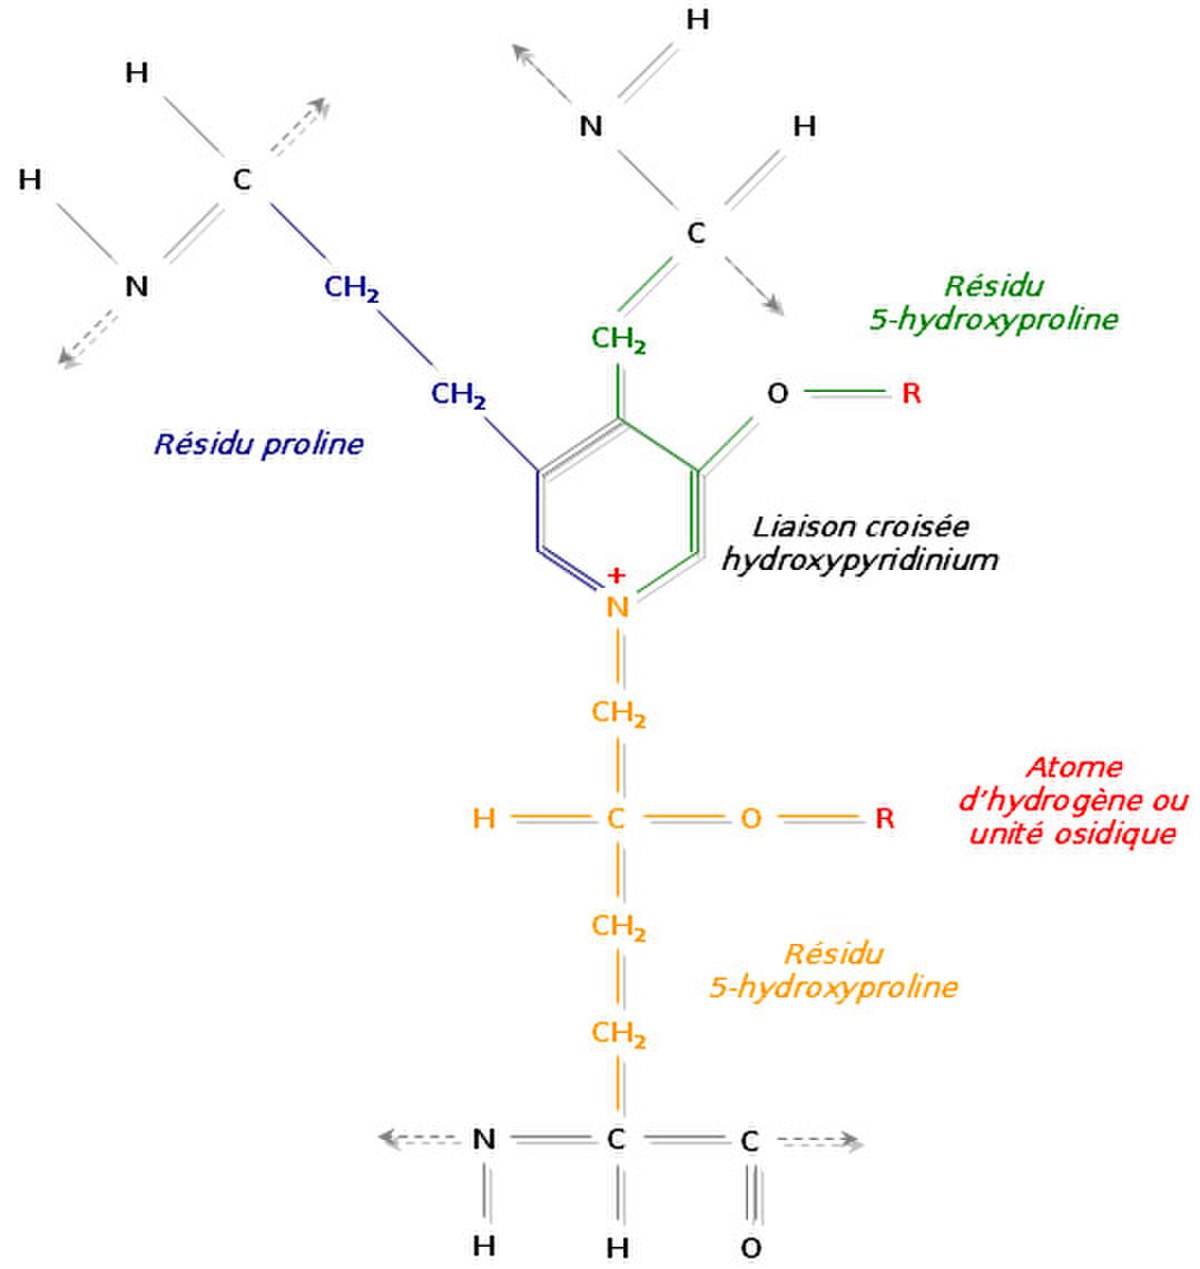 Liaison de trois régions polypeptidiques avec formation d’un hydroxypyridinium